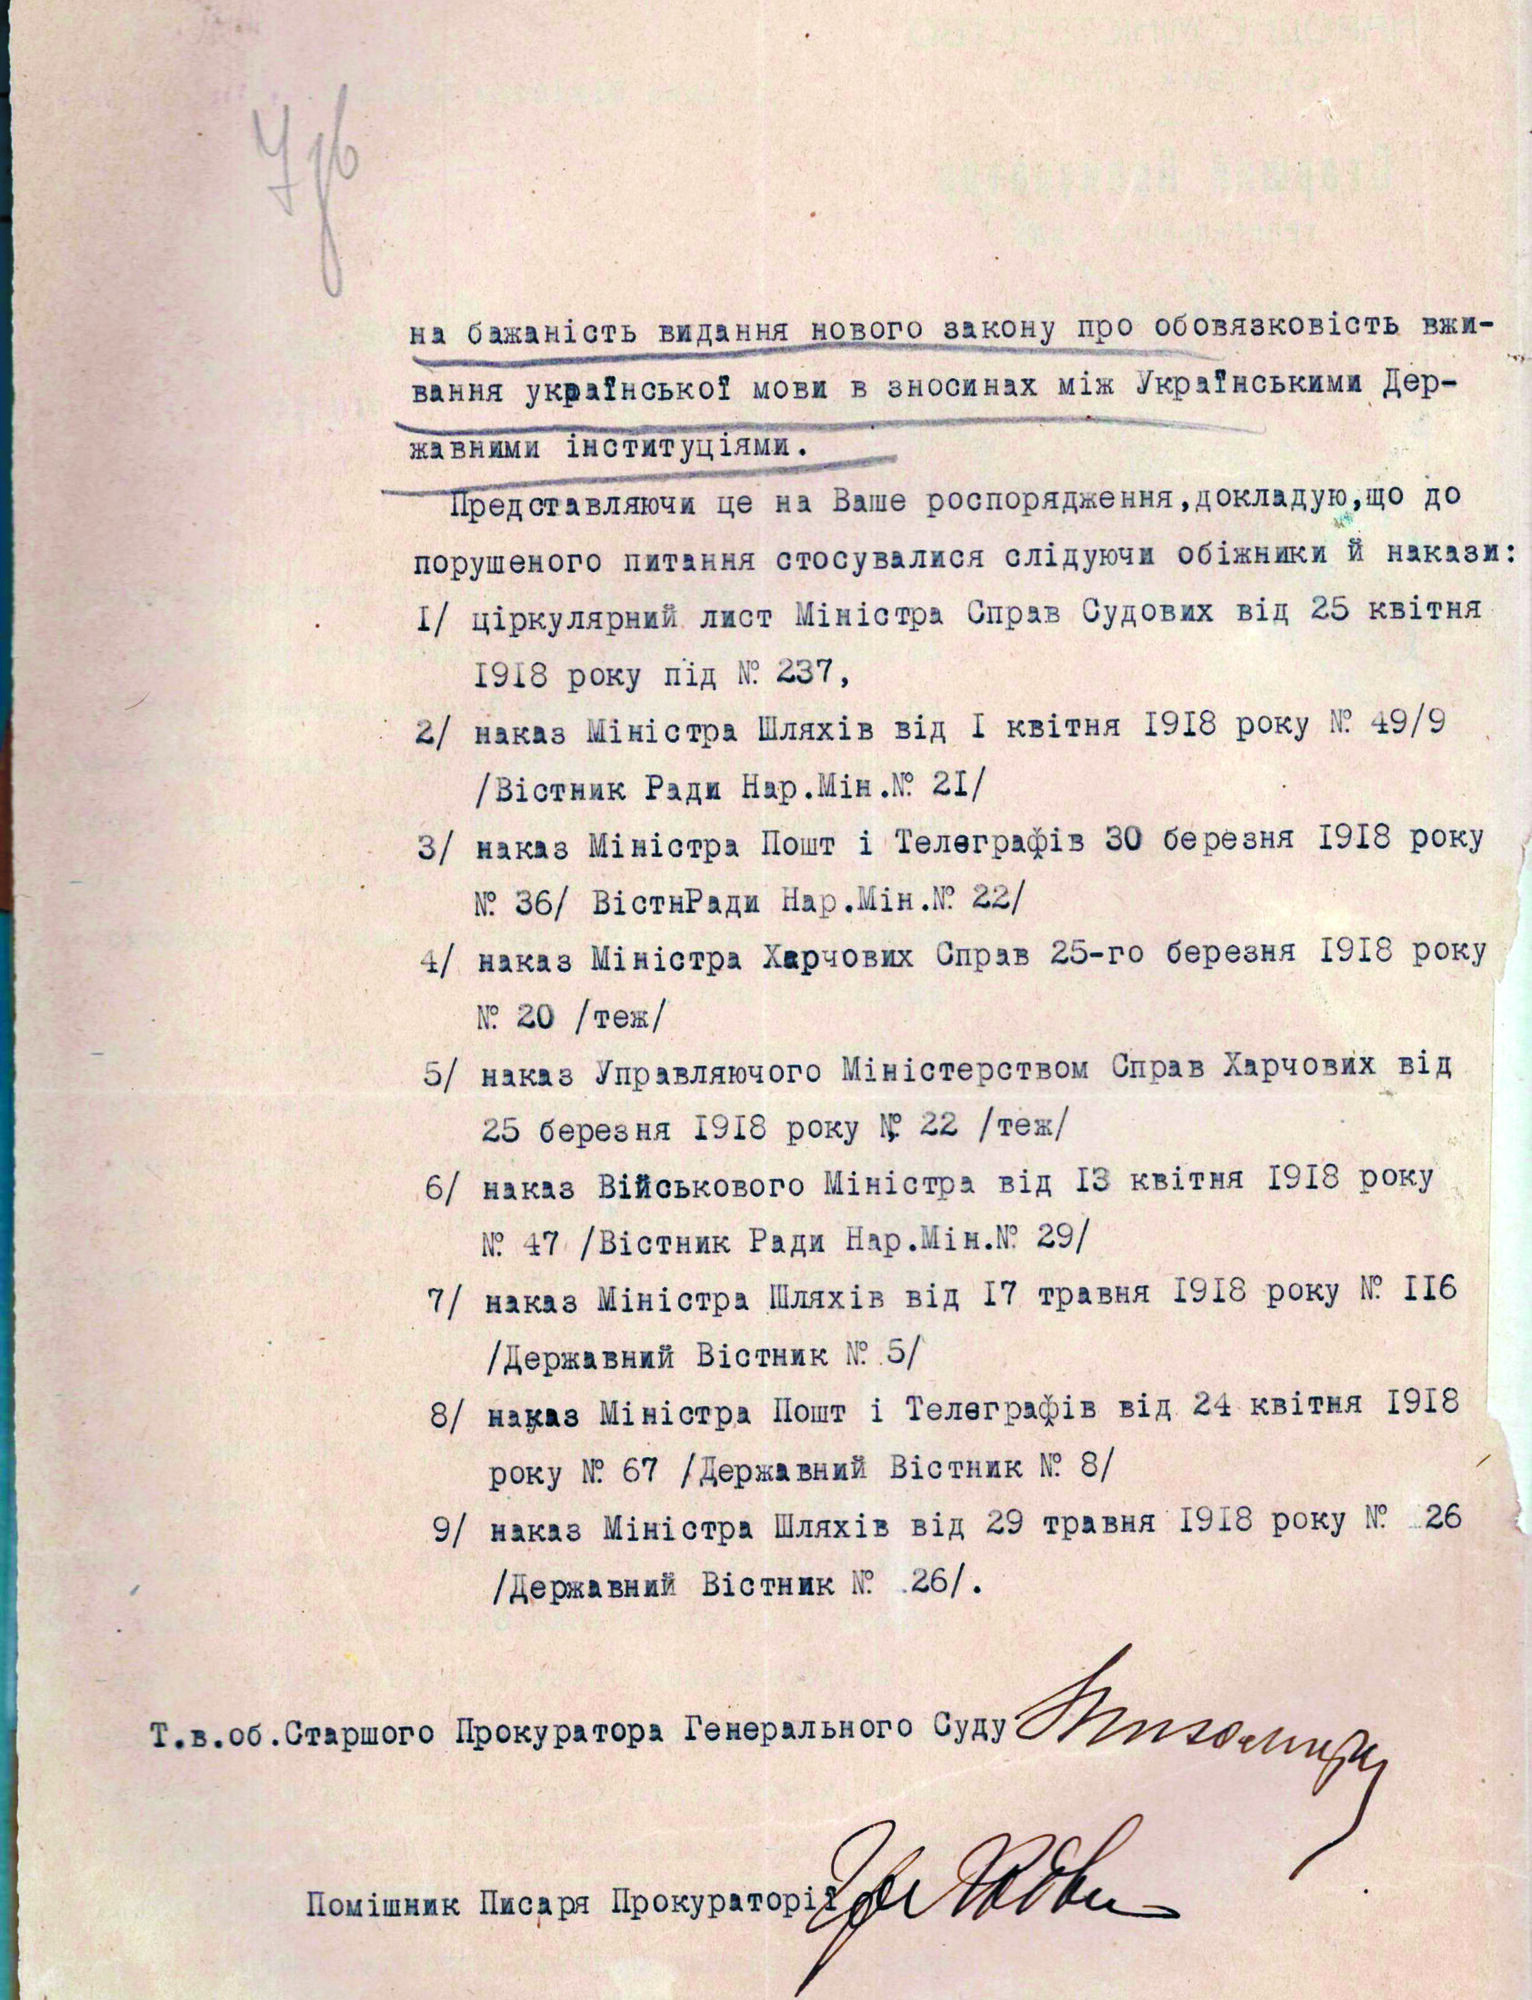 В Украине 100 лет назад заявляли о необходимости закона о языке: архивный документ